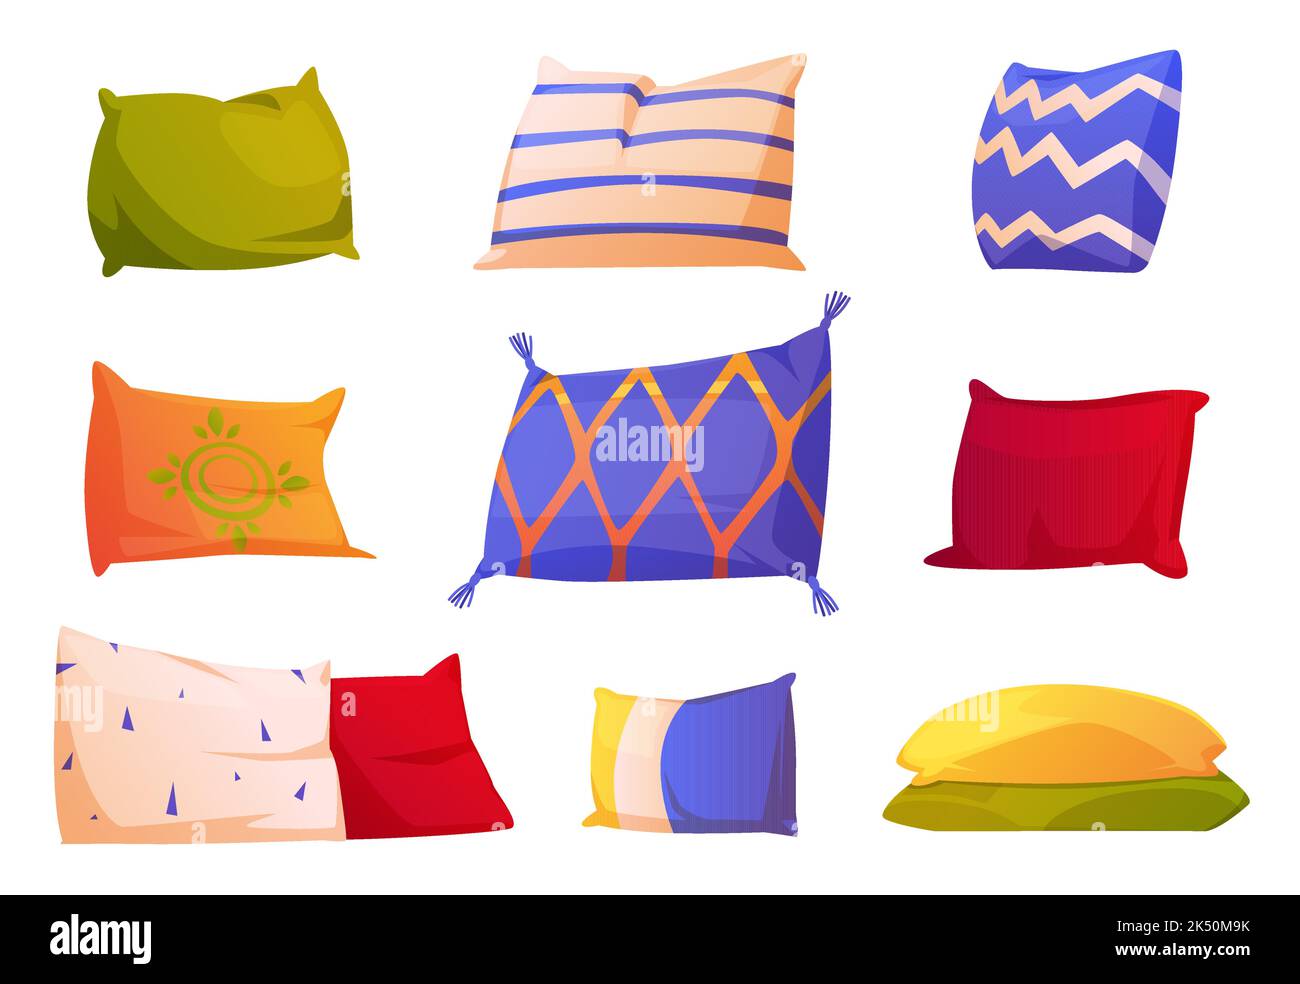 Set di cartoni animati di cuscini colorati isolati su sfondo bianco.  Illustrazione vettoriale di cuscini rettangolari e quadrati con diversi  ornamenti per guarire Immagine e Vettoriale - Alamy